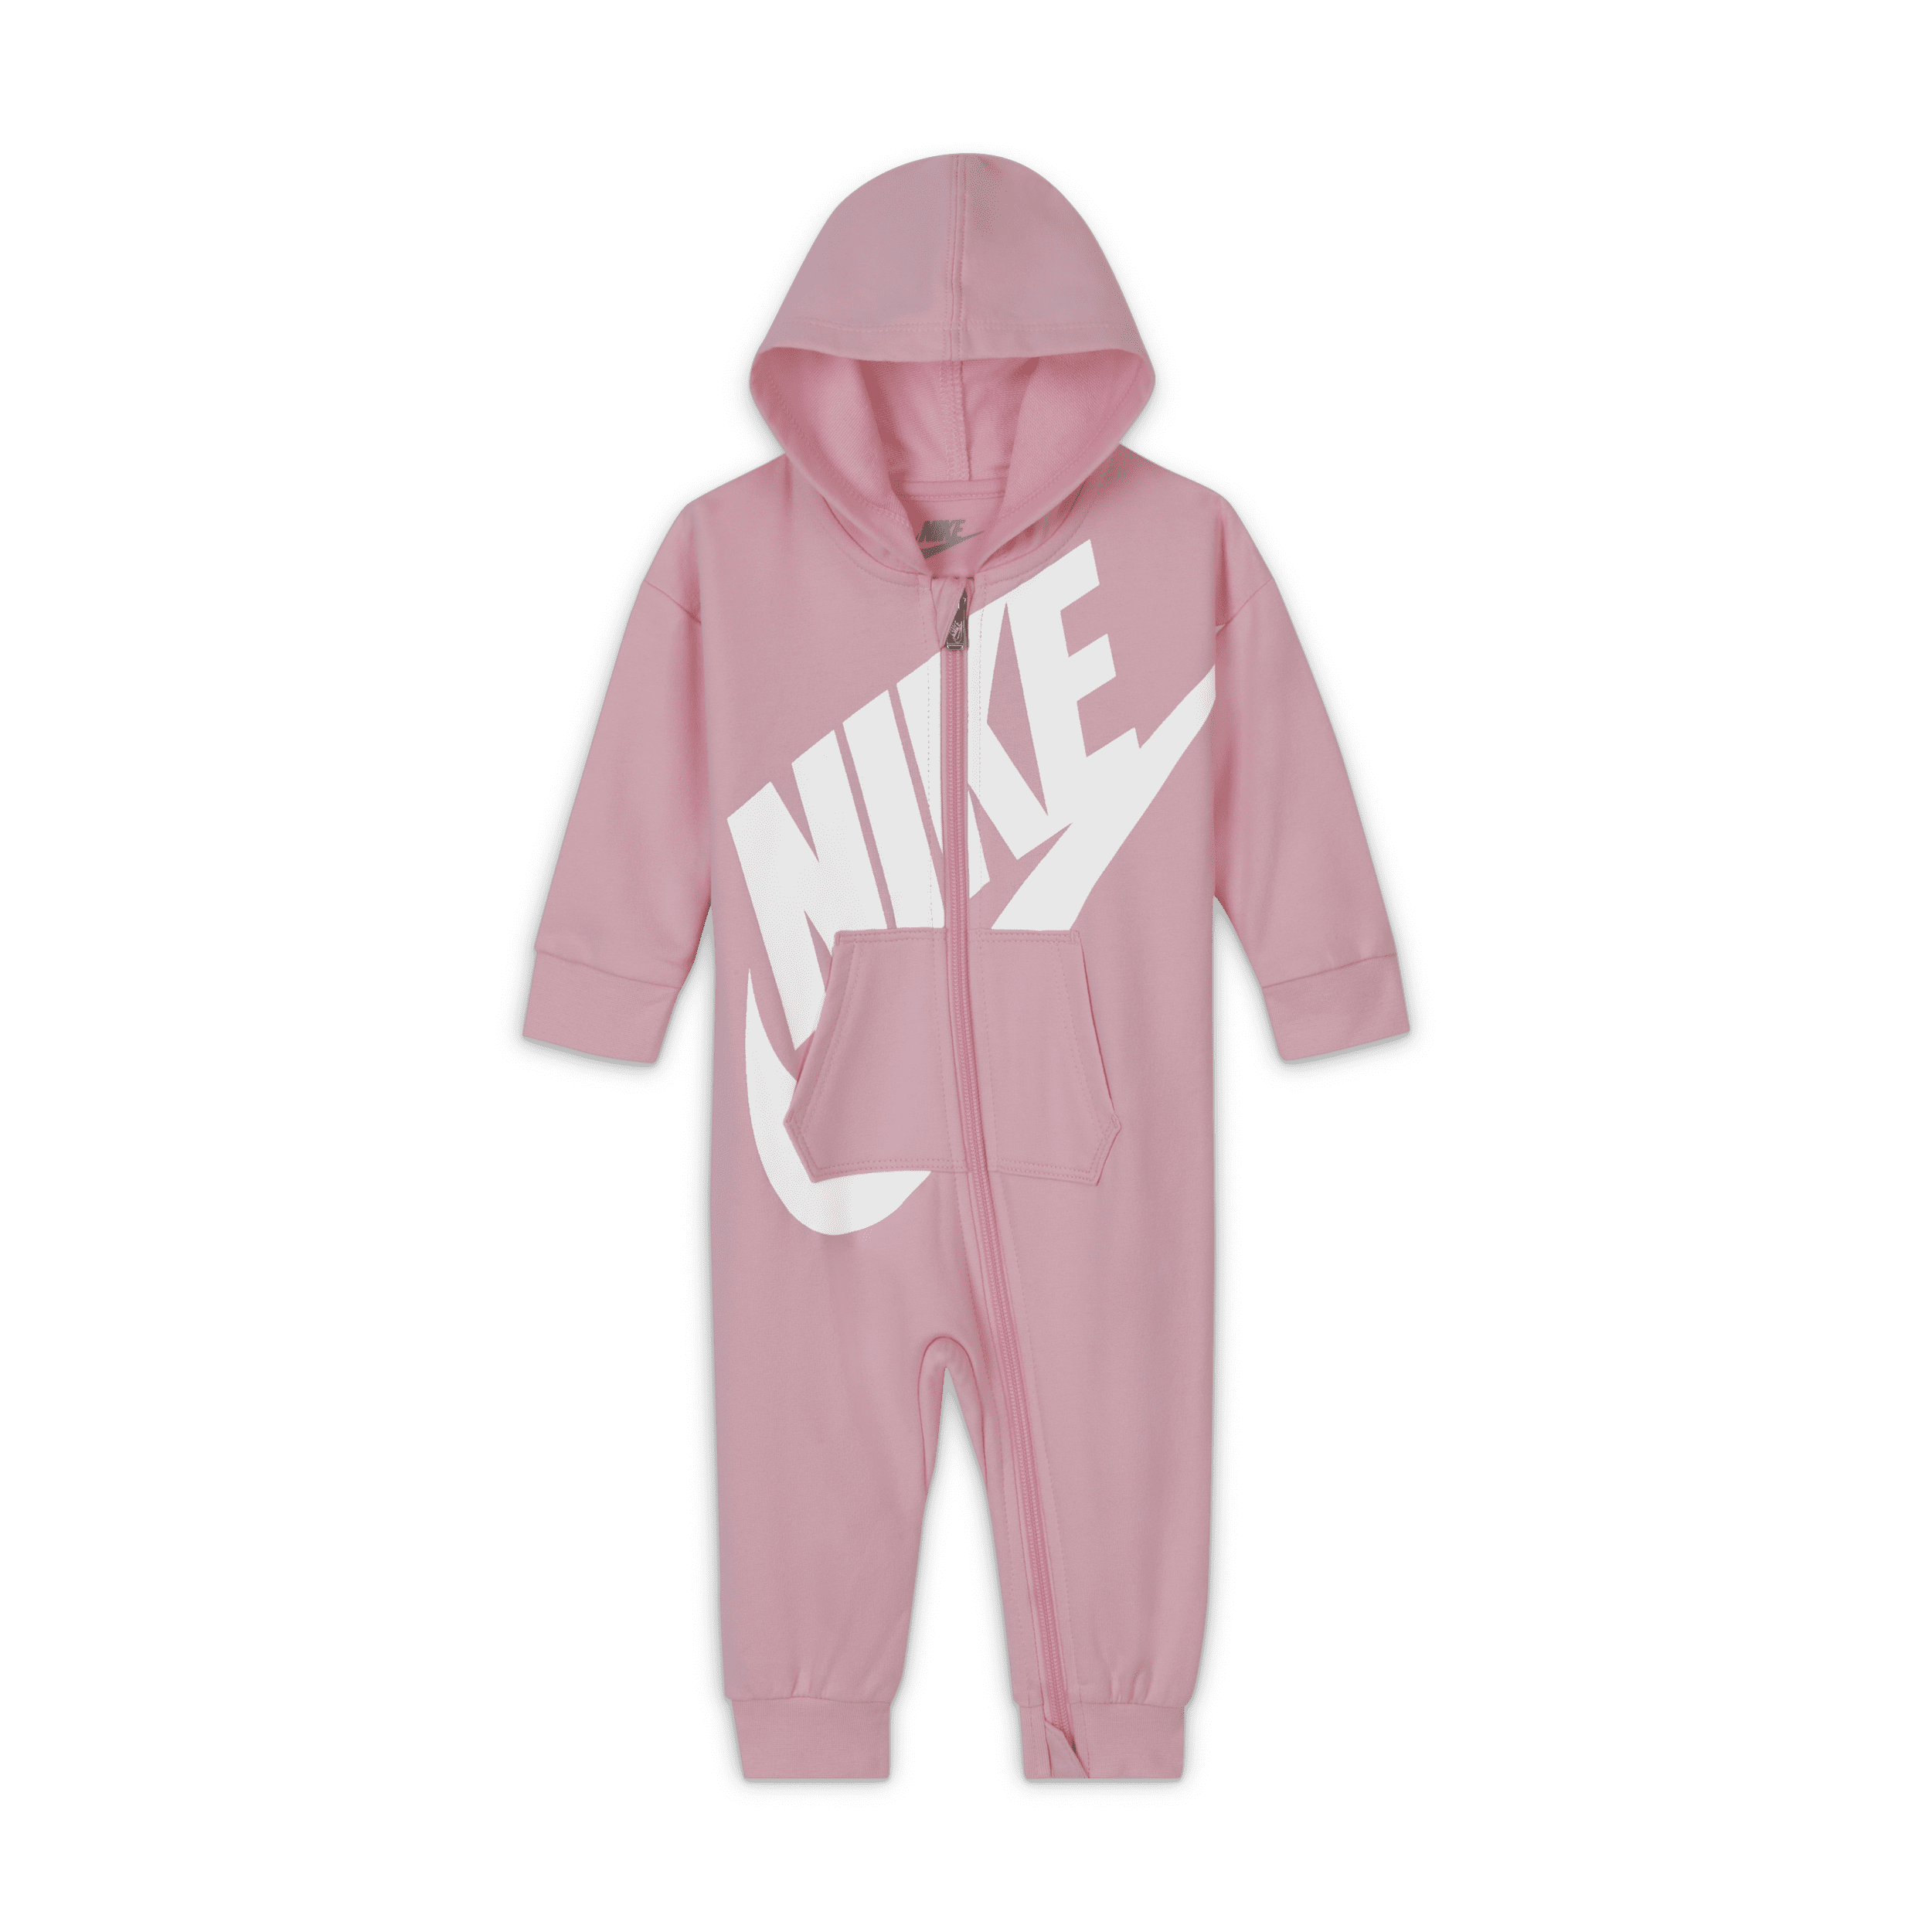 Nike Mono con cremallera completa - Bebé (0-12 M) - Rosa